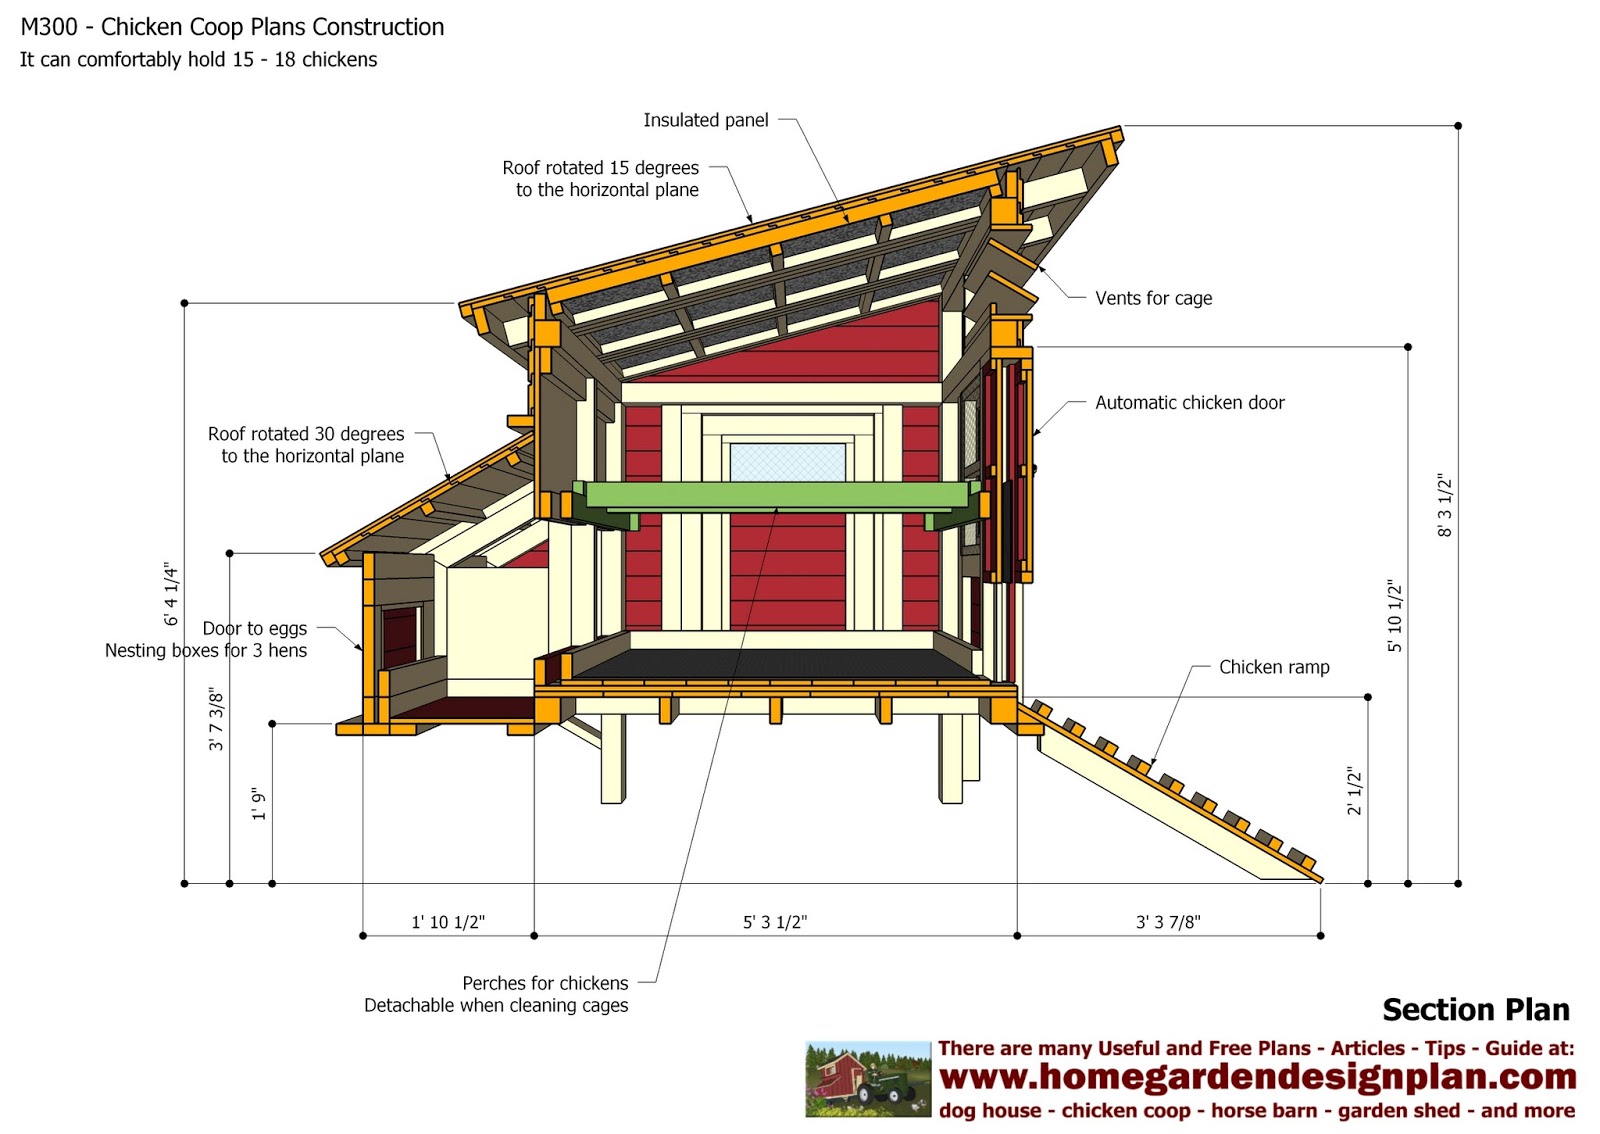 home garden plans: M300 - Chicken Coop Plans - Chicken Coop Design ...